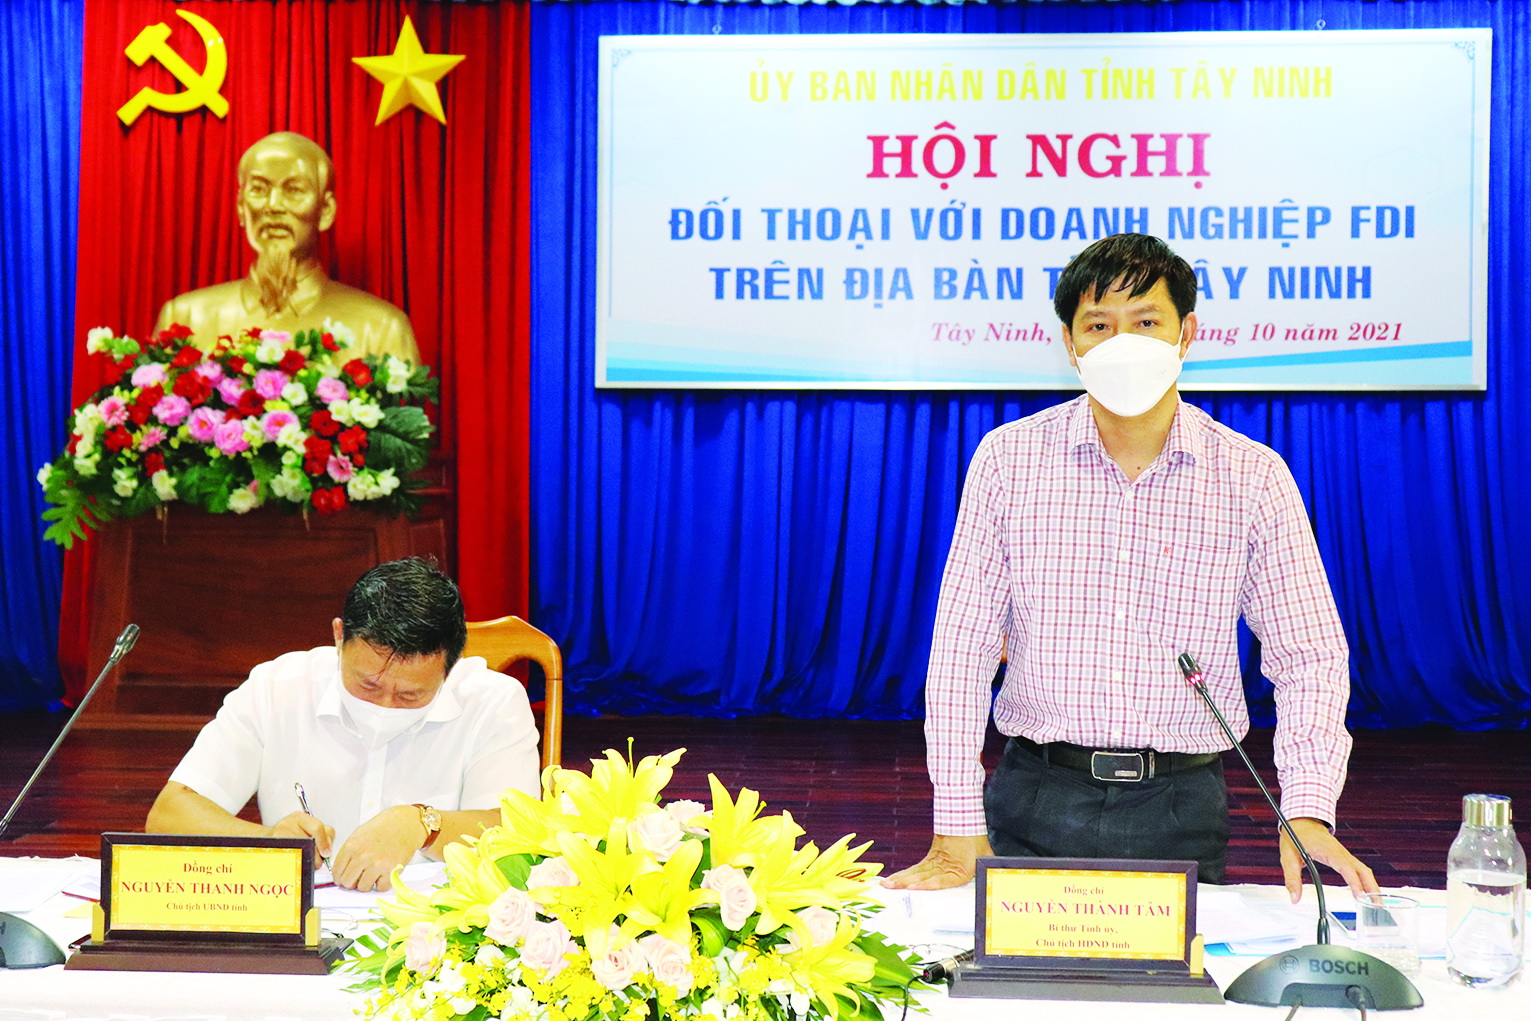 Điểm báo in Tây Ninh ngày 16.10.2021